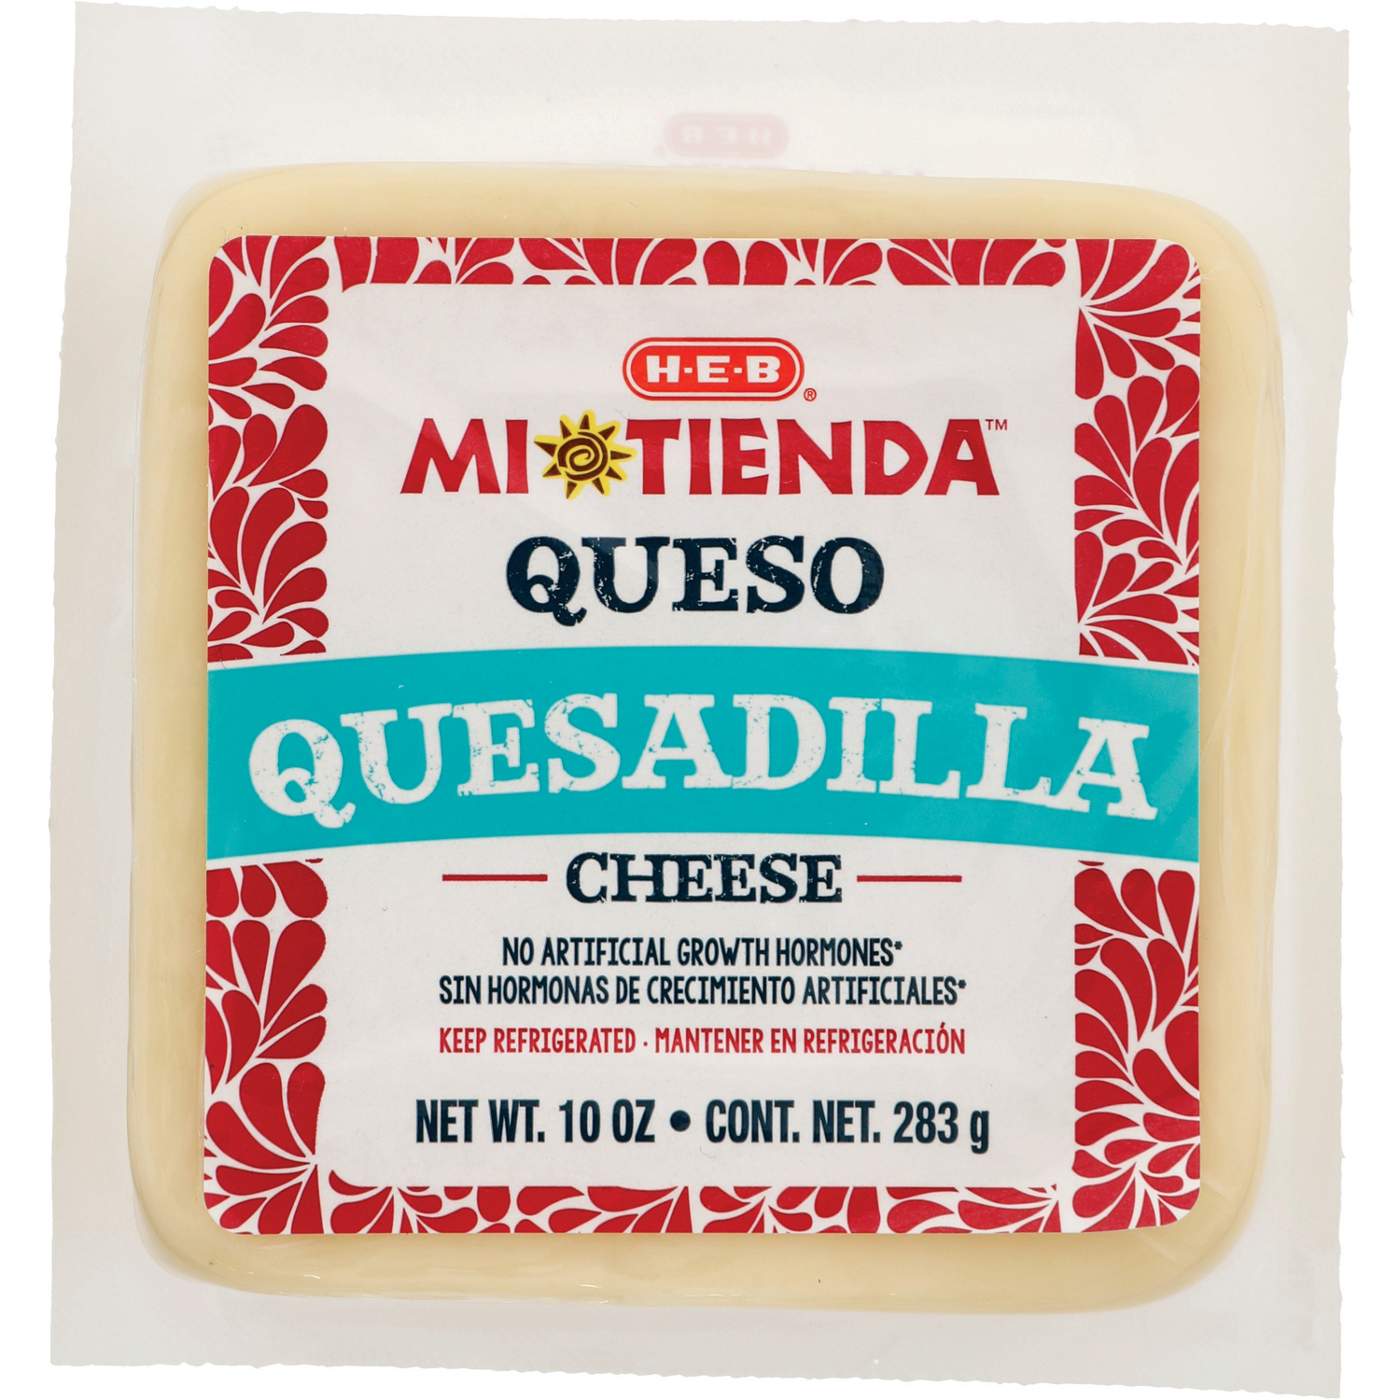 H-E-B Mi Tienda Queso Quesadilla Cheese; image 1 of 2